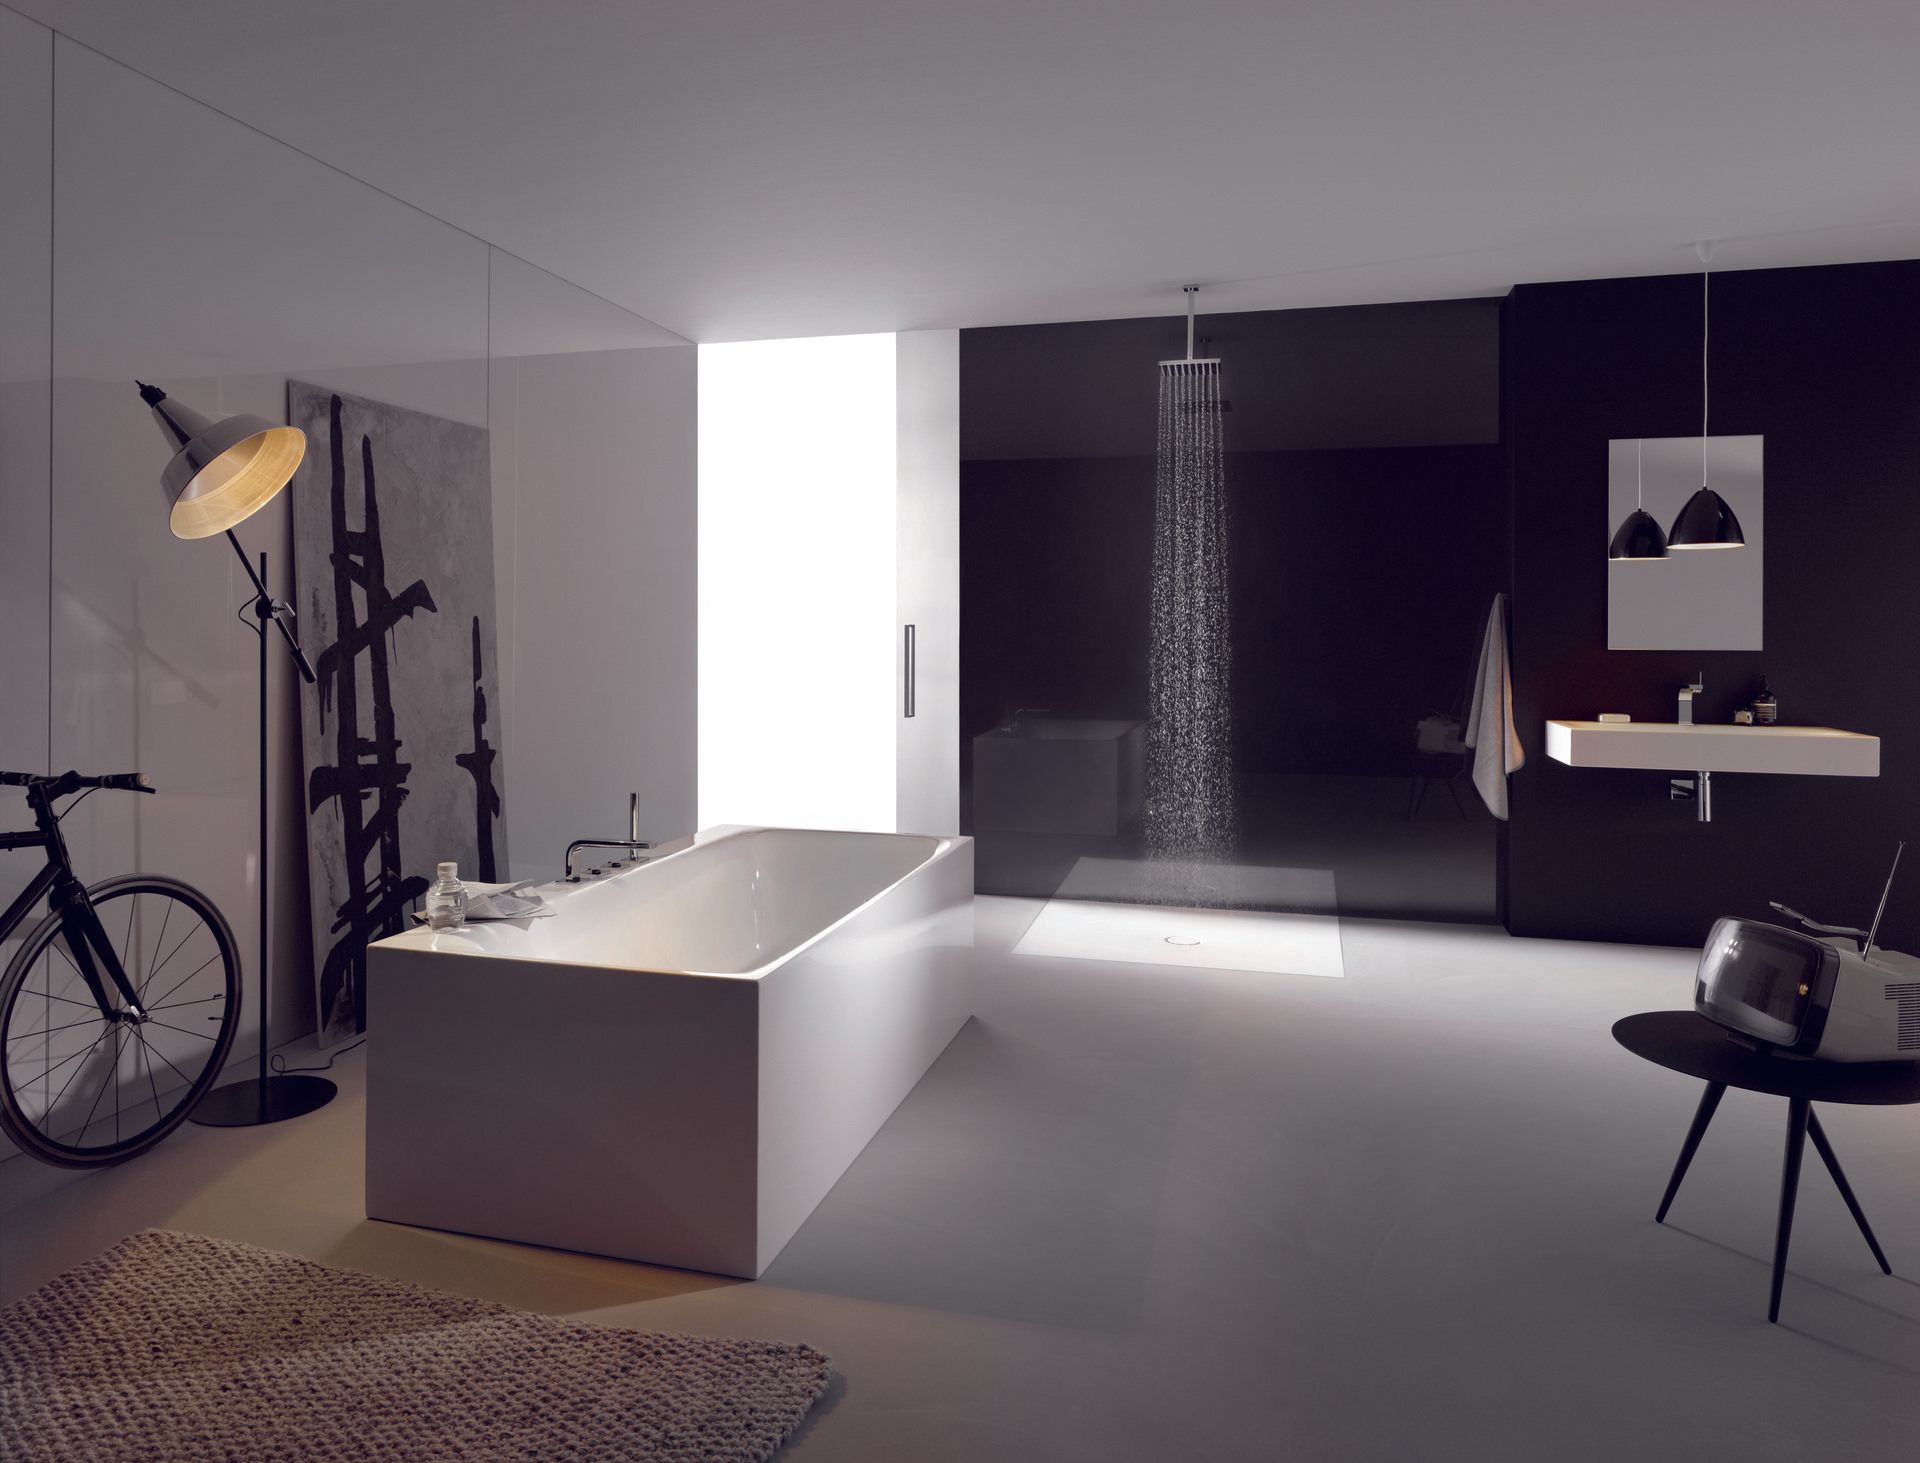 Referenzbild Galeriebild Online-Badausstellung, Badplanung in Kirchheim, im Raum stehende Badewanne mit Waschtisch und Dusche